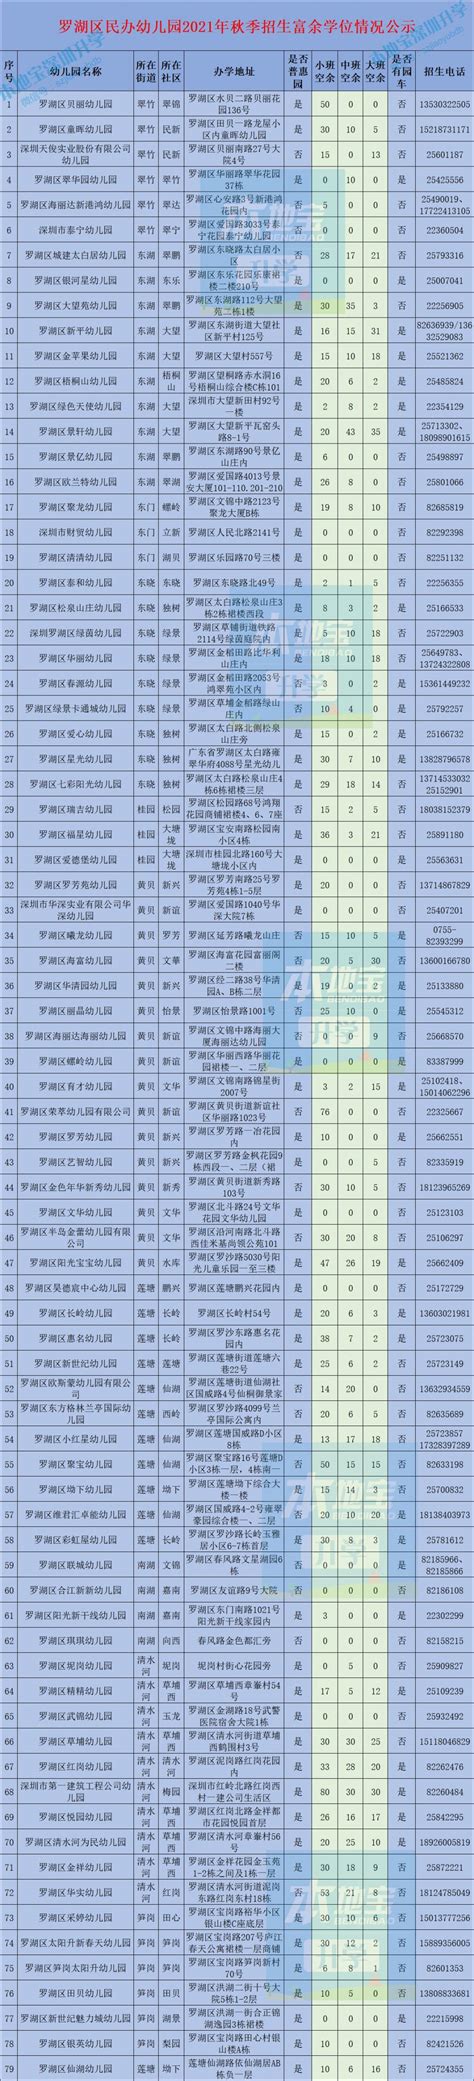 罗湖区民办幼儿园2021年秋季富余学位情况一览表- 深圳本地宝